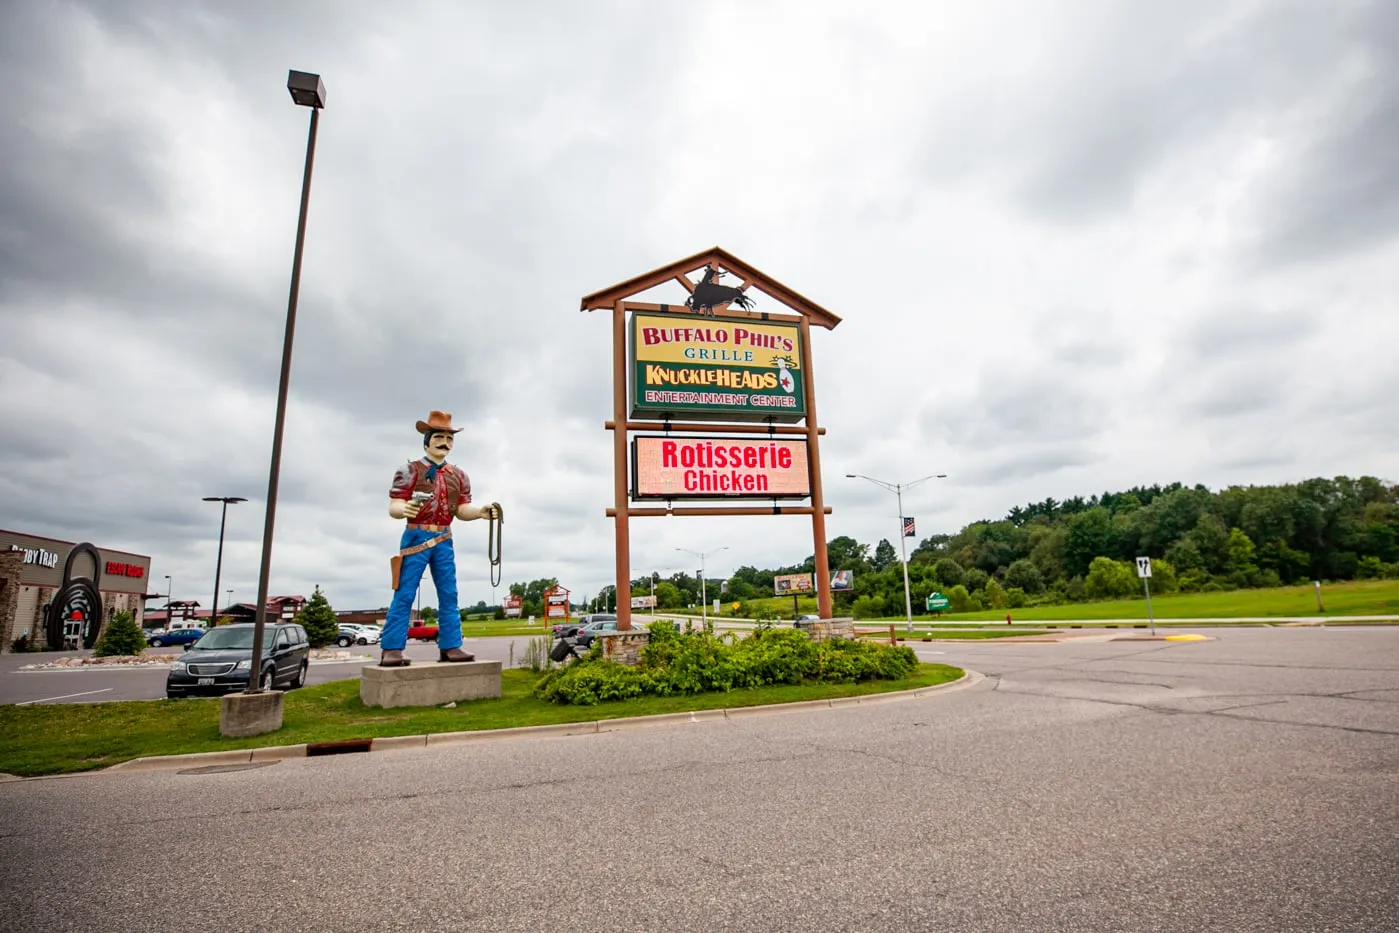 Giant Fiberglass Cowboy Statue in Wisconsin Dells | Wisconsin Dells Muffler Man and Roadside Attractions in Wisconsin